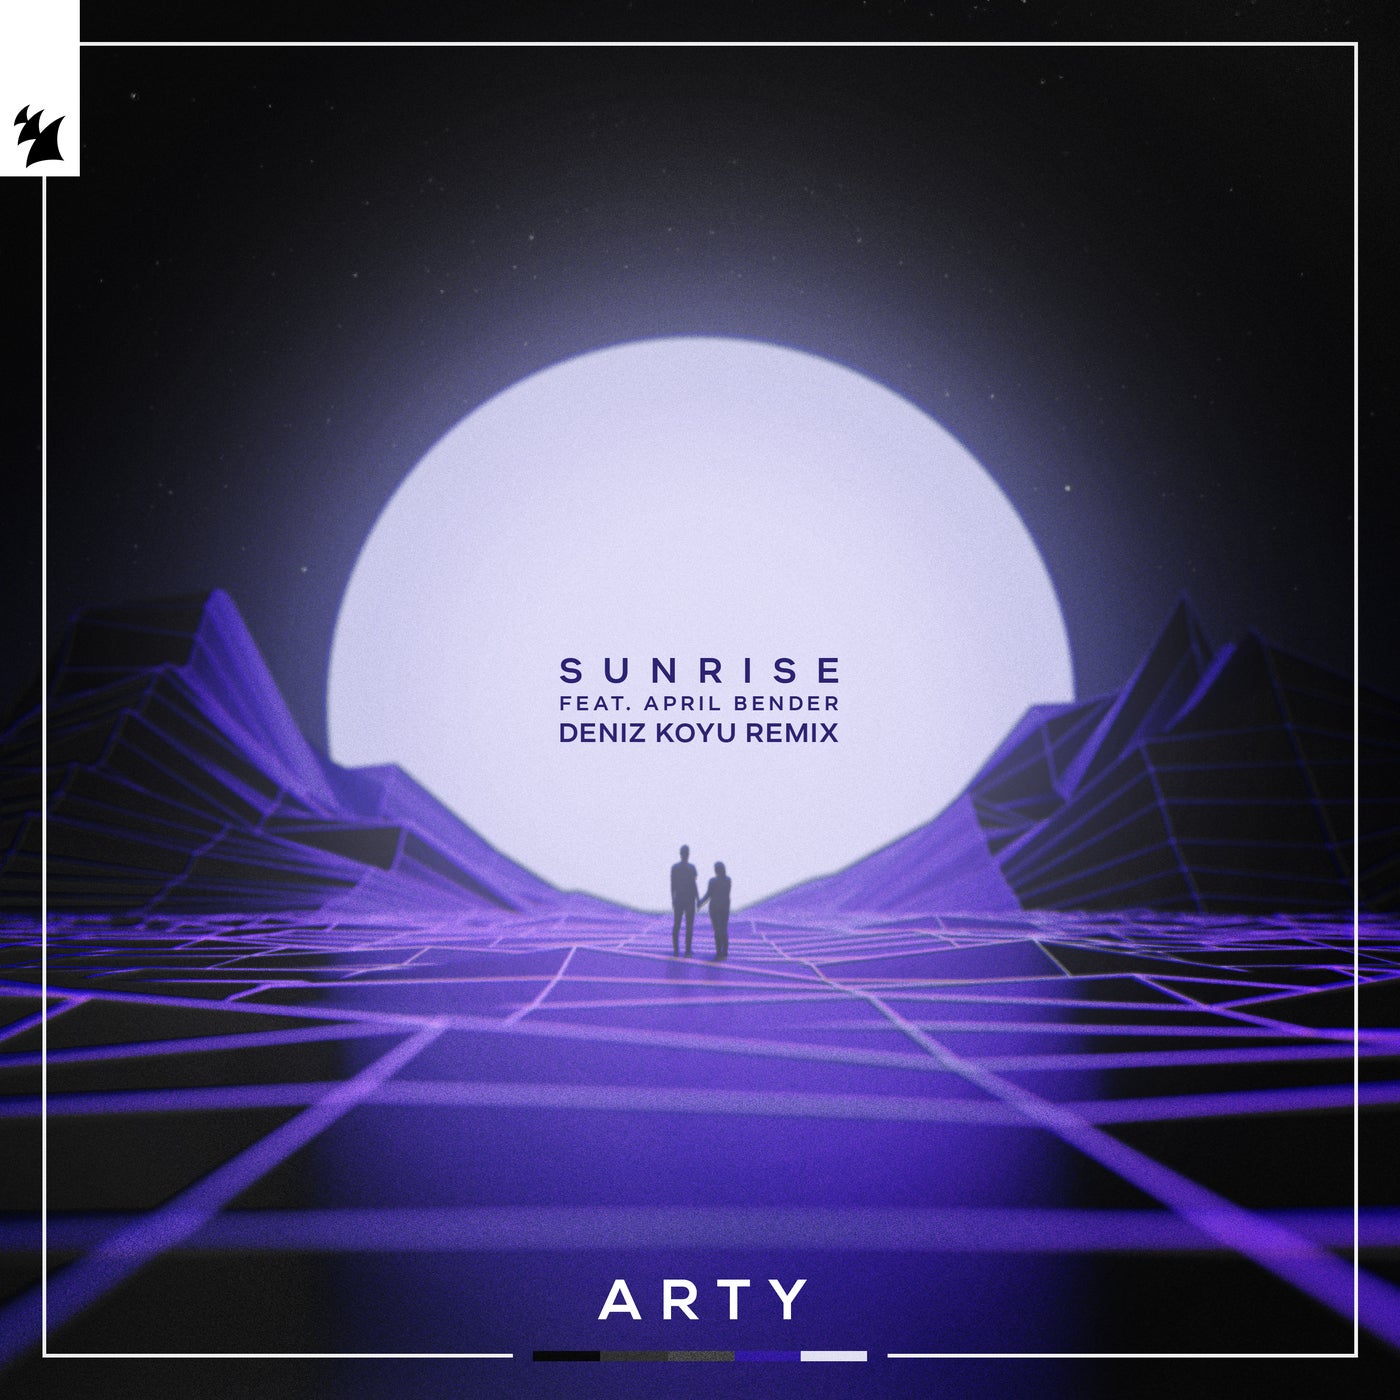 Sunrise - Deniz Koyu Remix